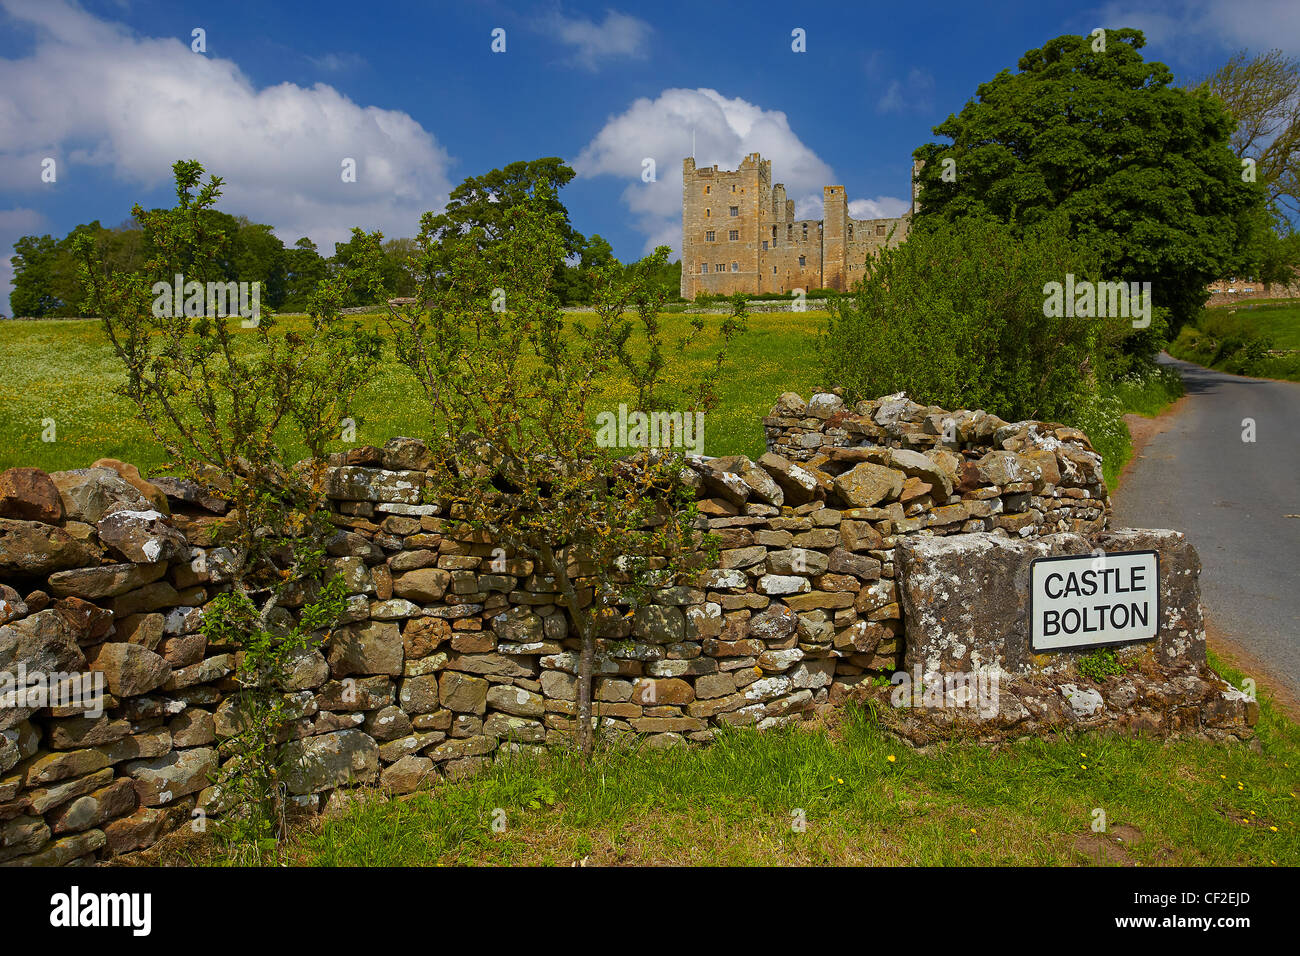 Inscrivez-vous sur le bord de la route pour le village de Château de Bolton Bolton Castle qui tire son nom. Banque D'Images